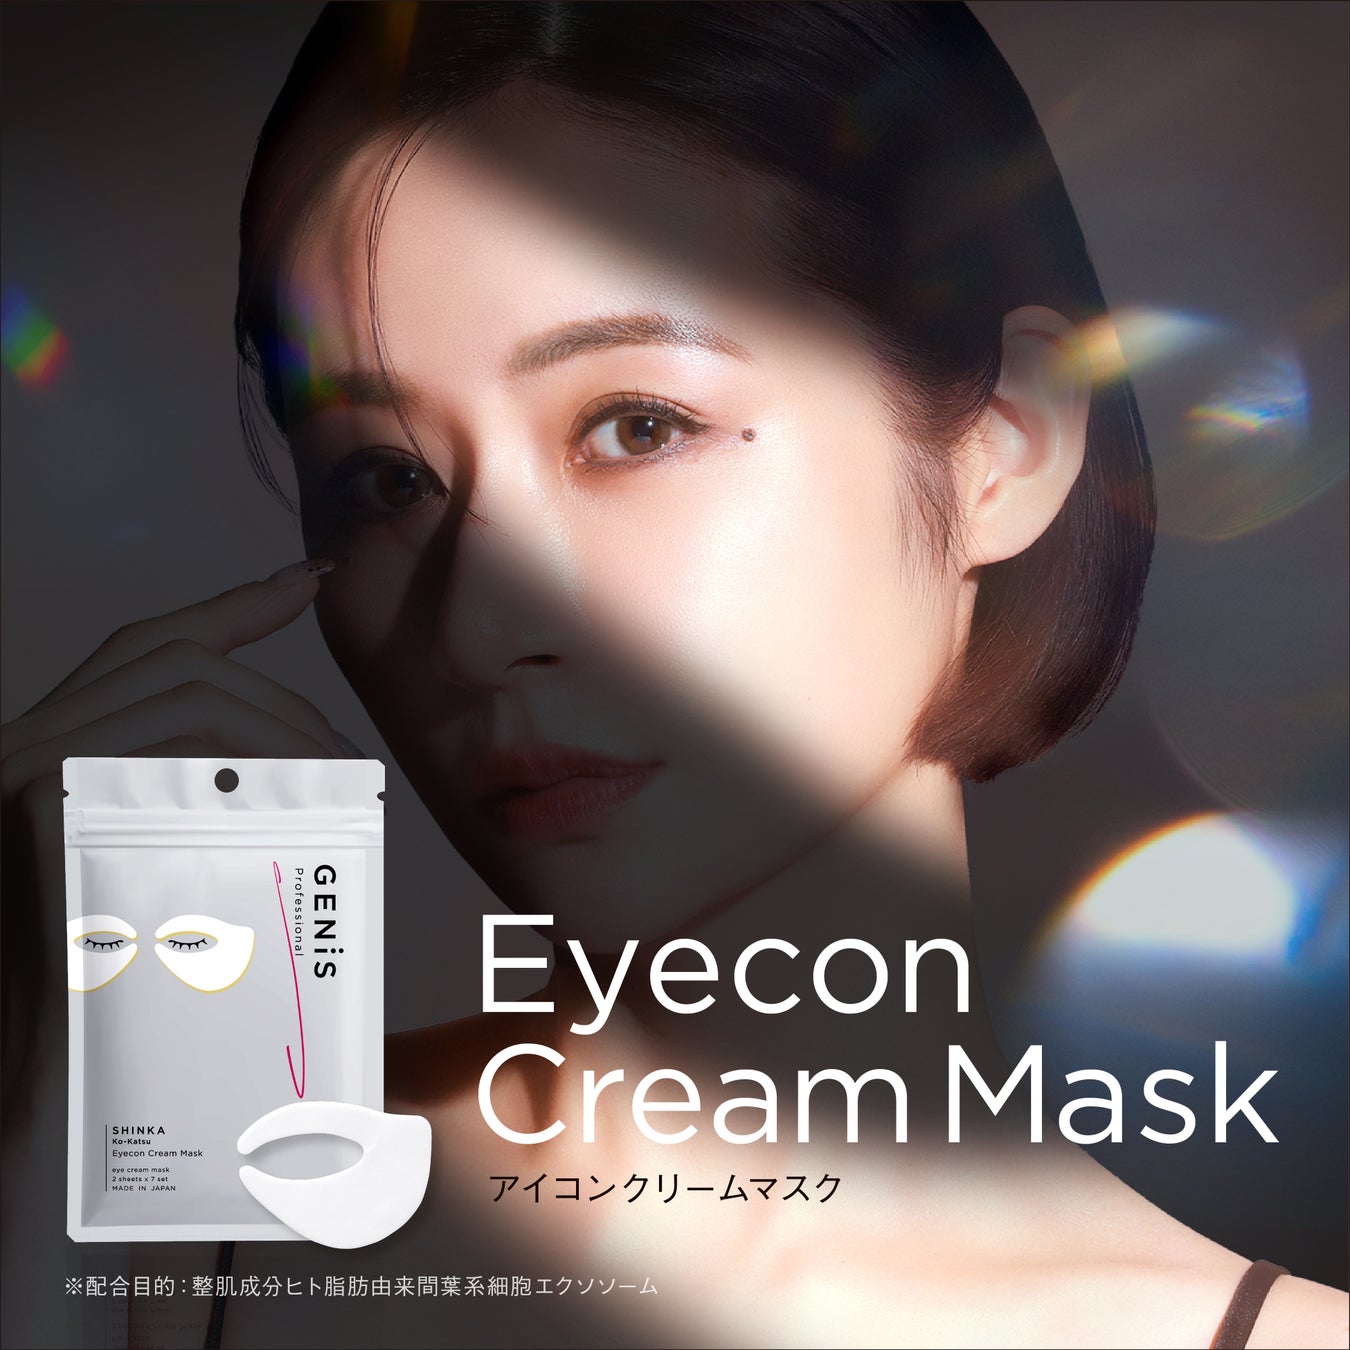 【新発売】360°トータルアプローチのアイケア“Eyecon Cream Mask” 宮崎麗果・黒木啓司が開発監修のサイエンスコスメGENiSより新登場。